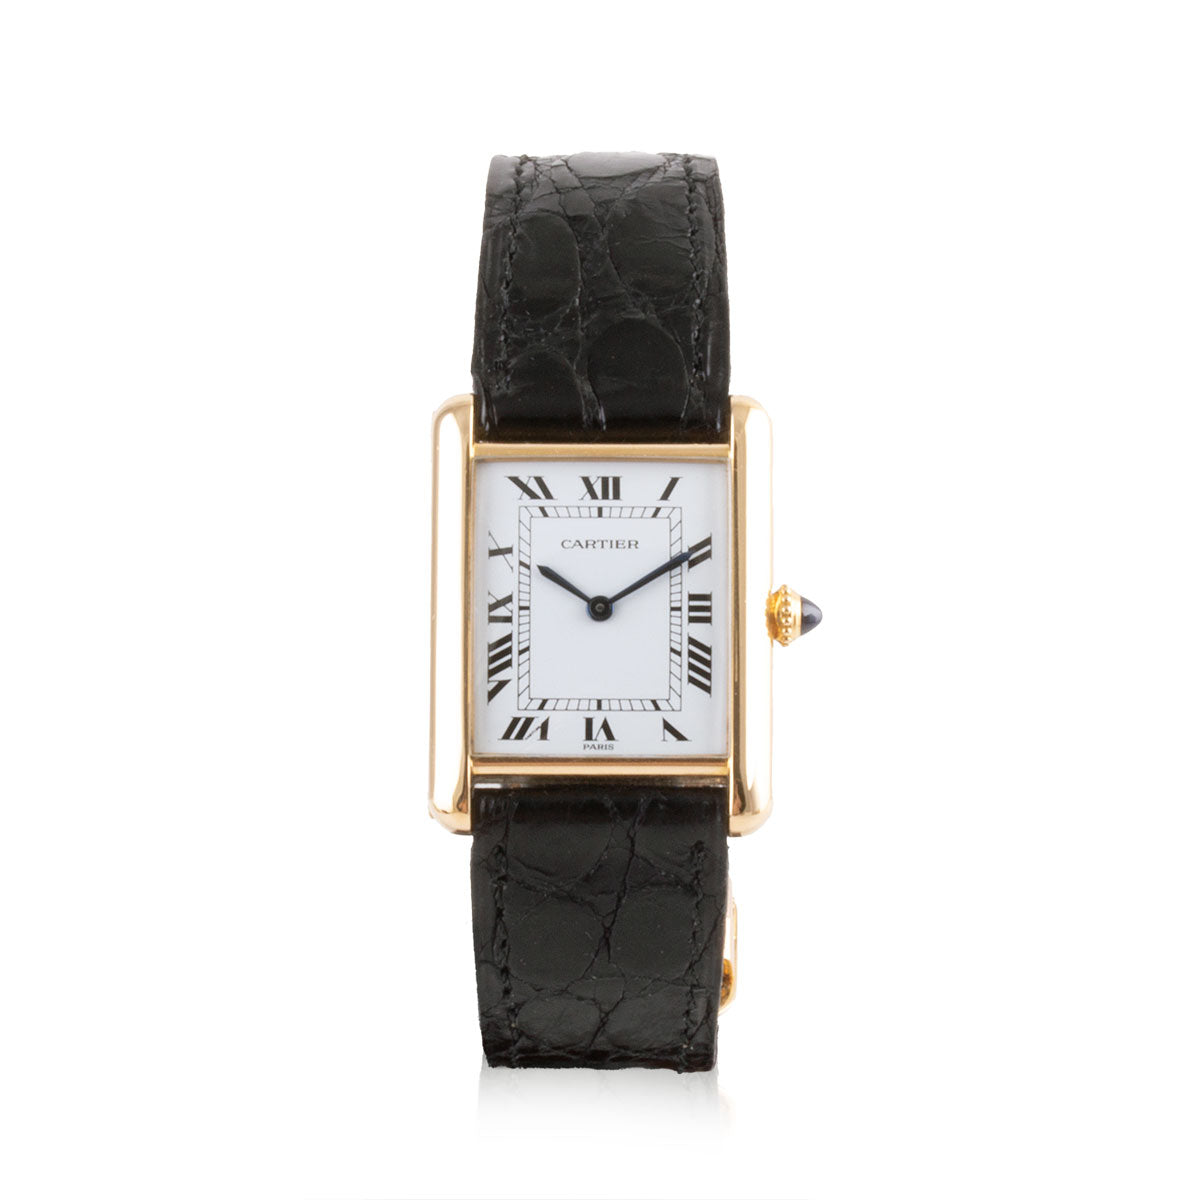 Second-hand watch - Cartier - Tank - 7300€